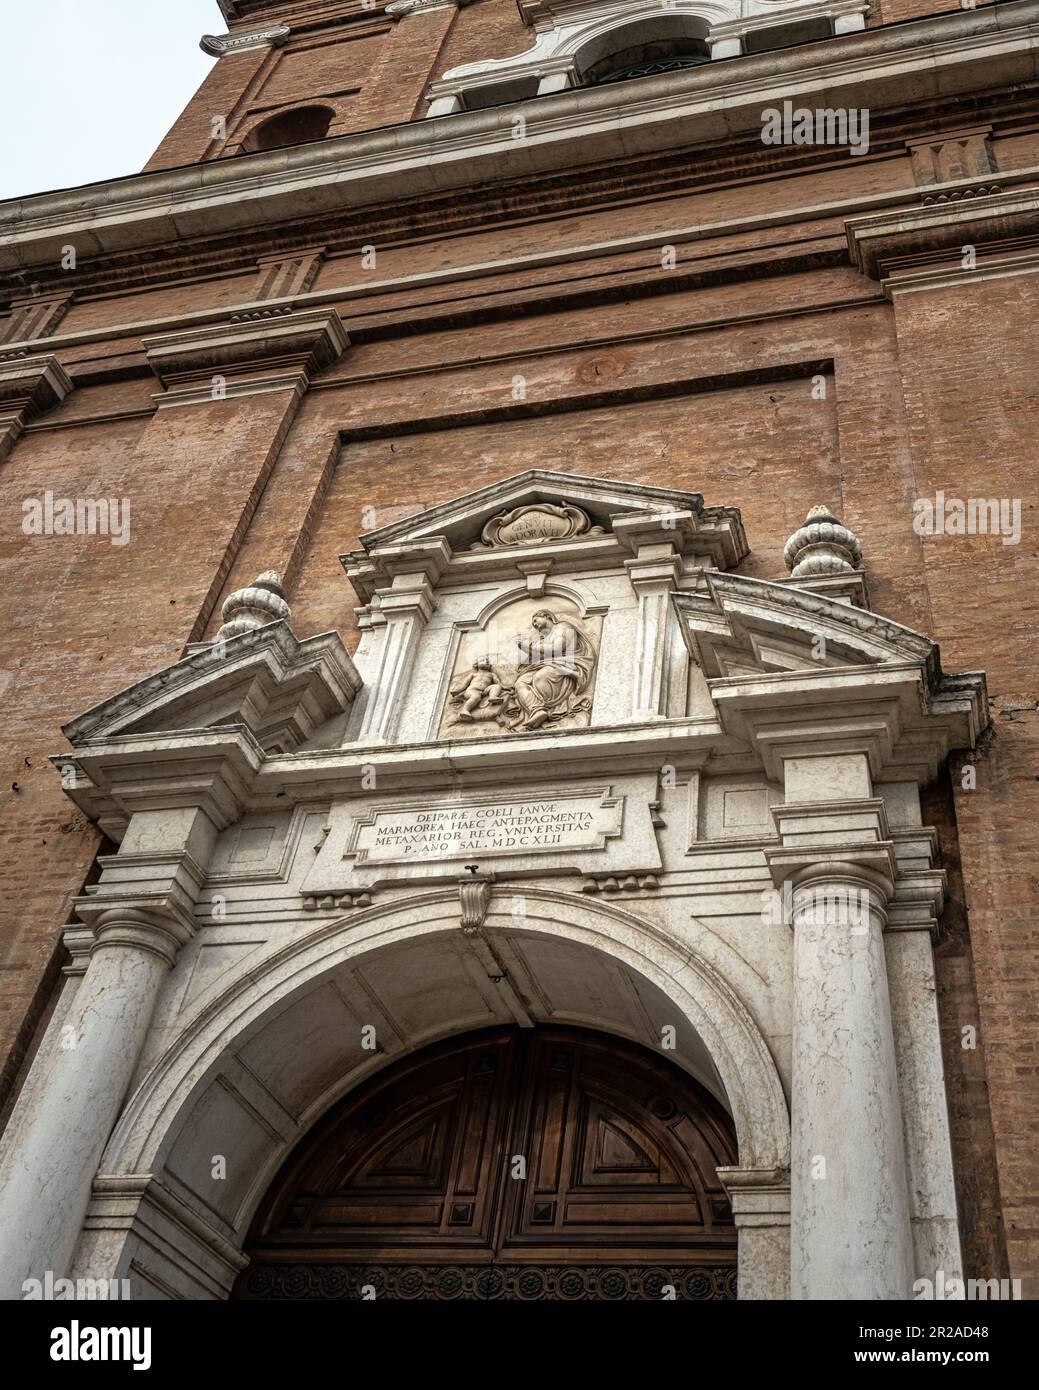 Portal decorado con mármol y estuco blanco de la fachada de la Basílica de la Beata Vergine della Ghiara. Reggio Emilia, Emilia Romagna, Italia Foto de stock